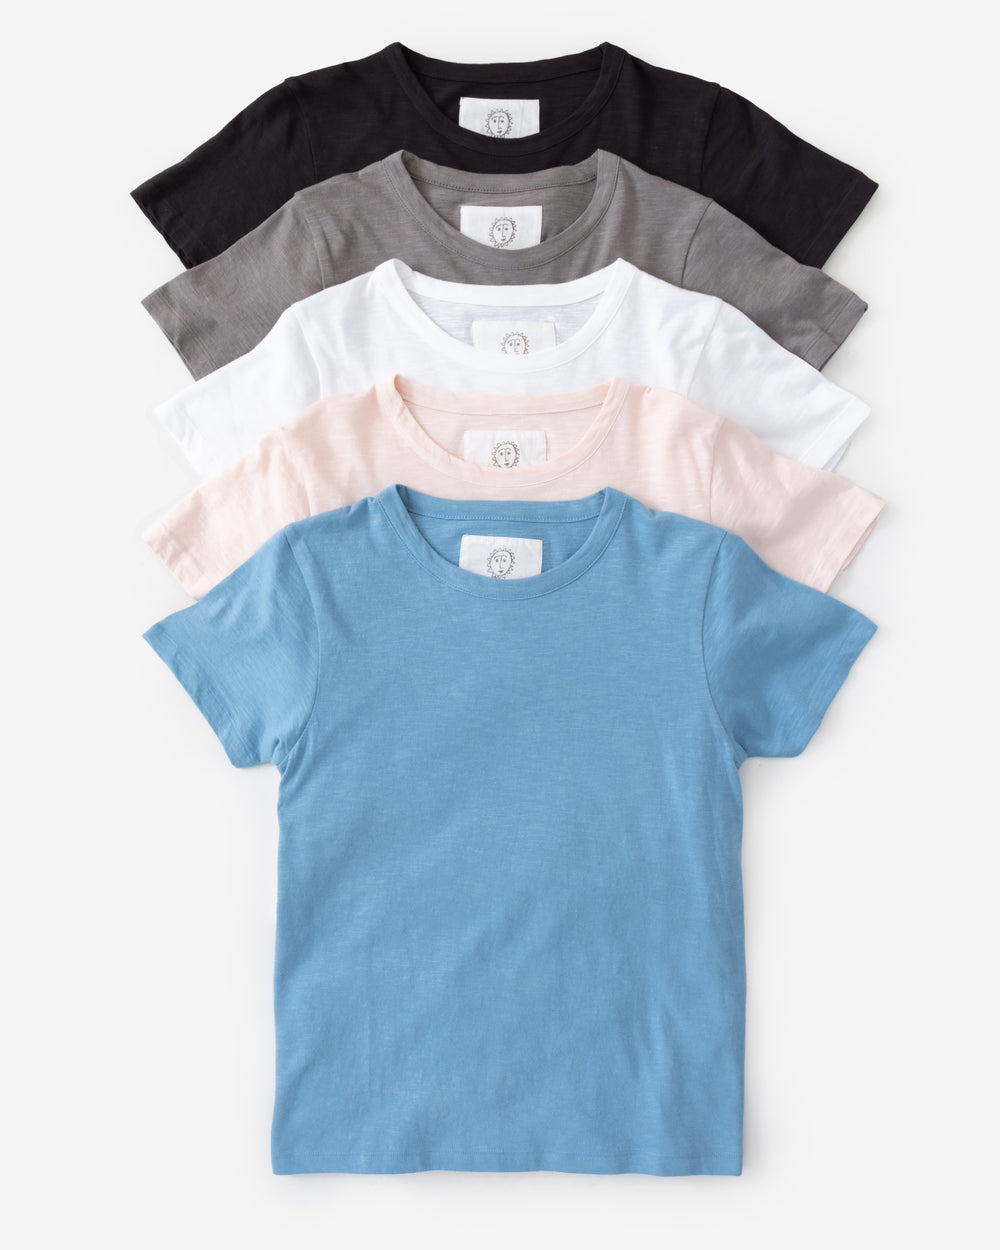 Terra & Sky T-Shirt Top - Gem